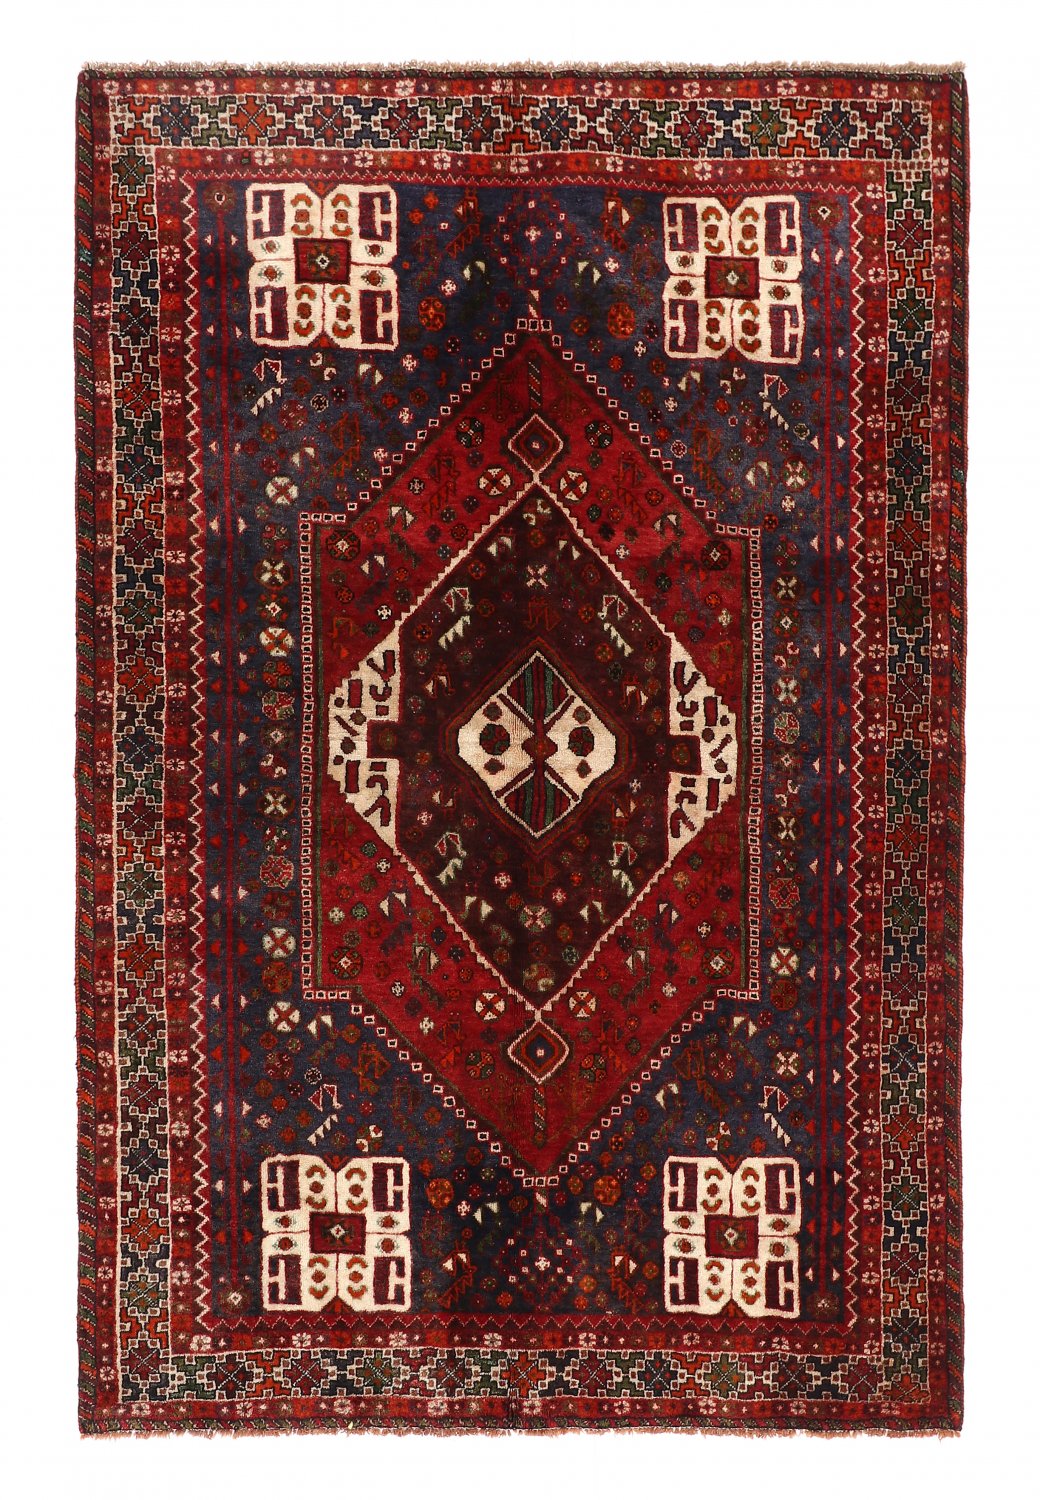 Persian rug Hamedan 246 x 159 cm